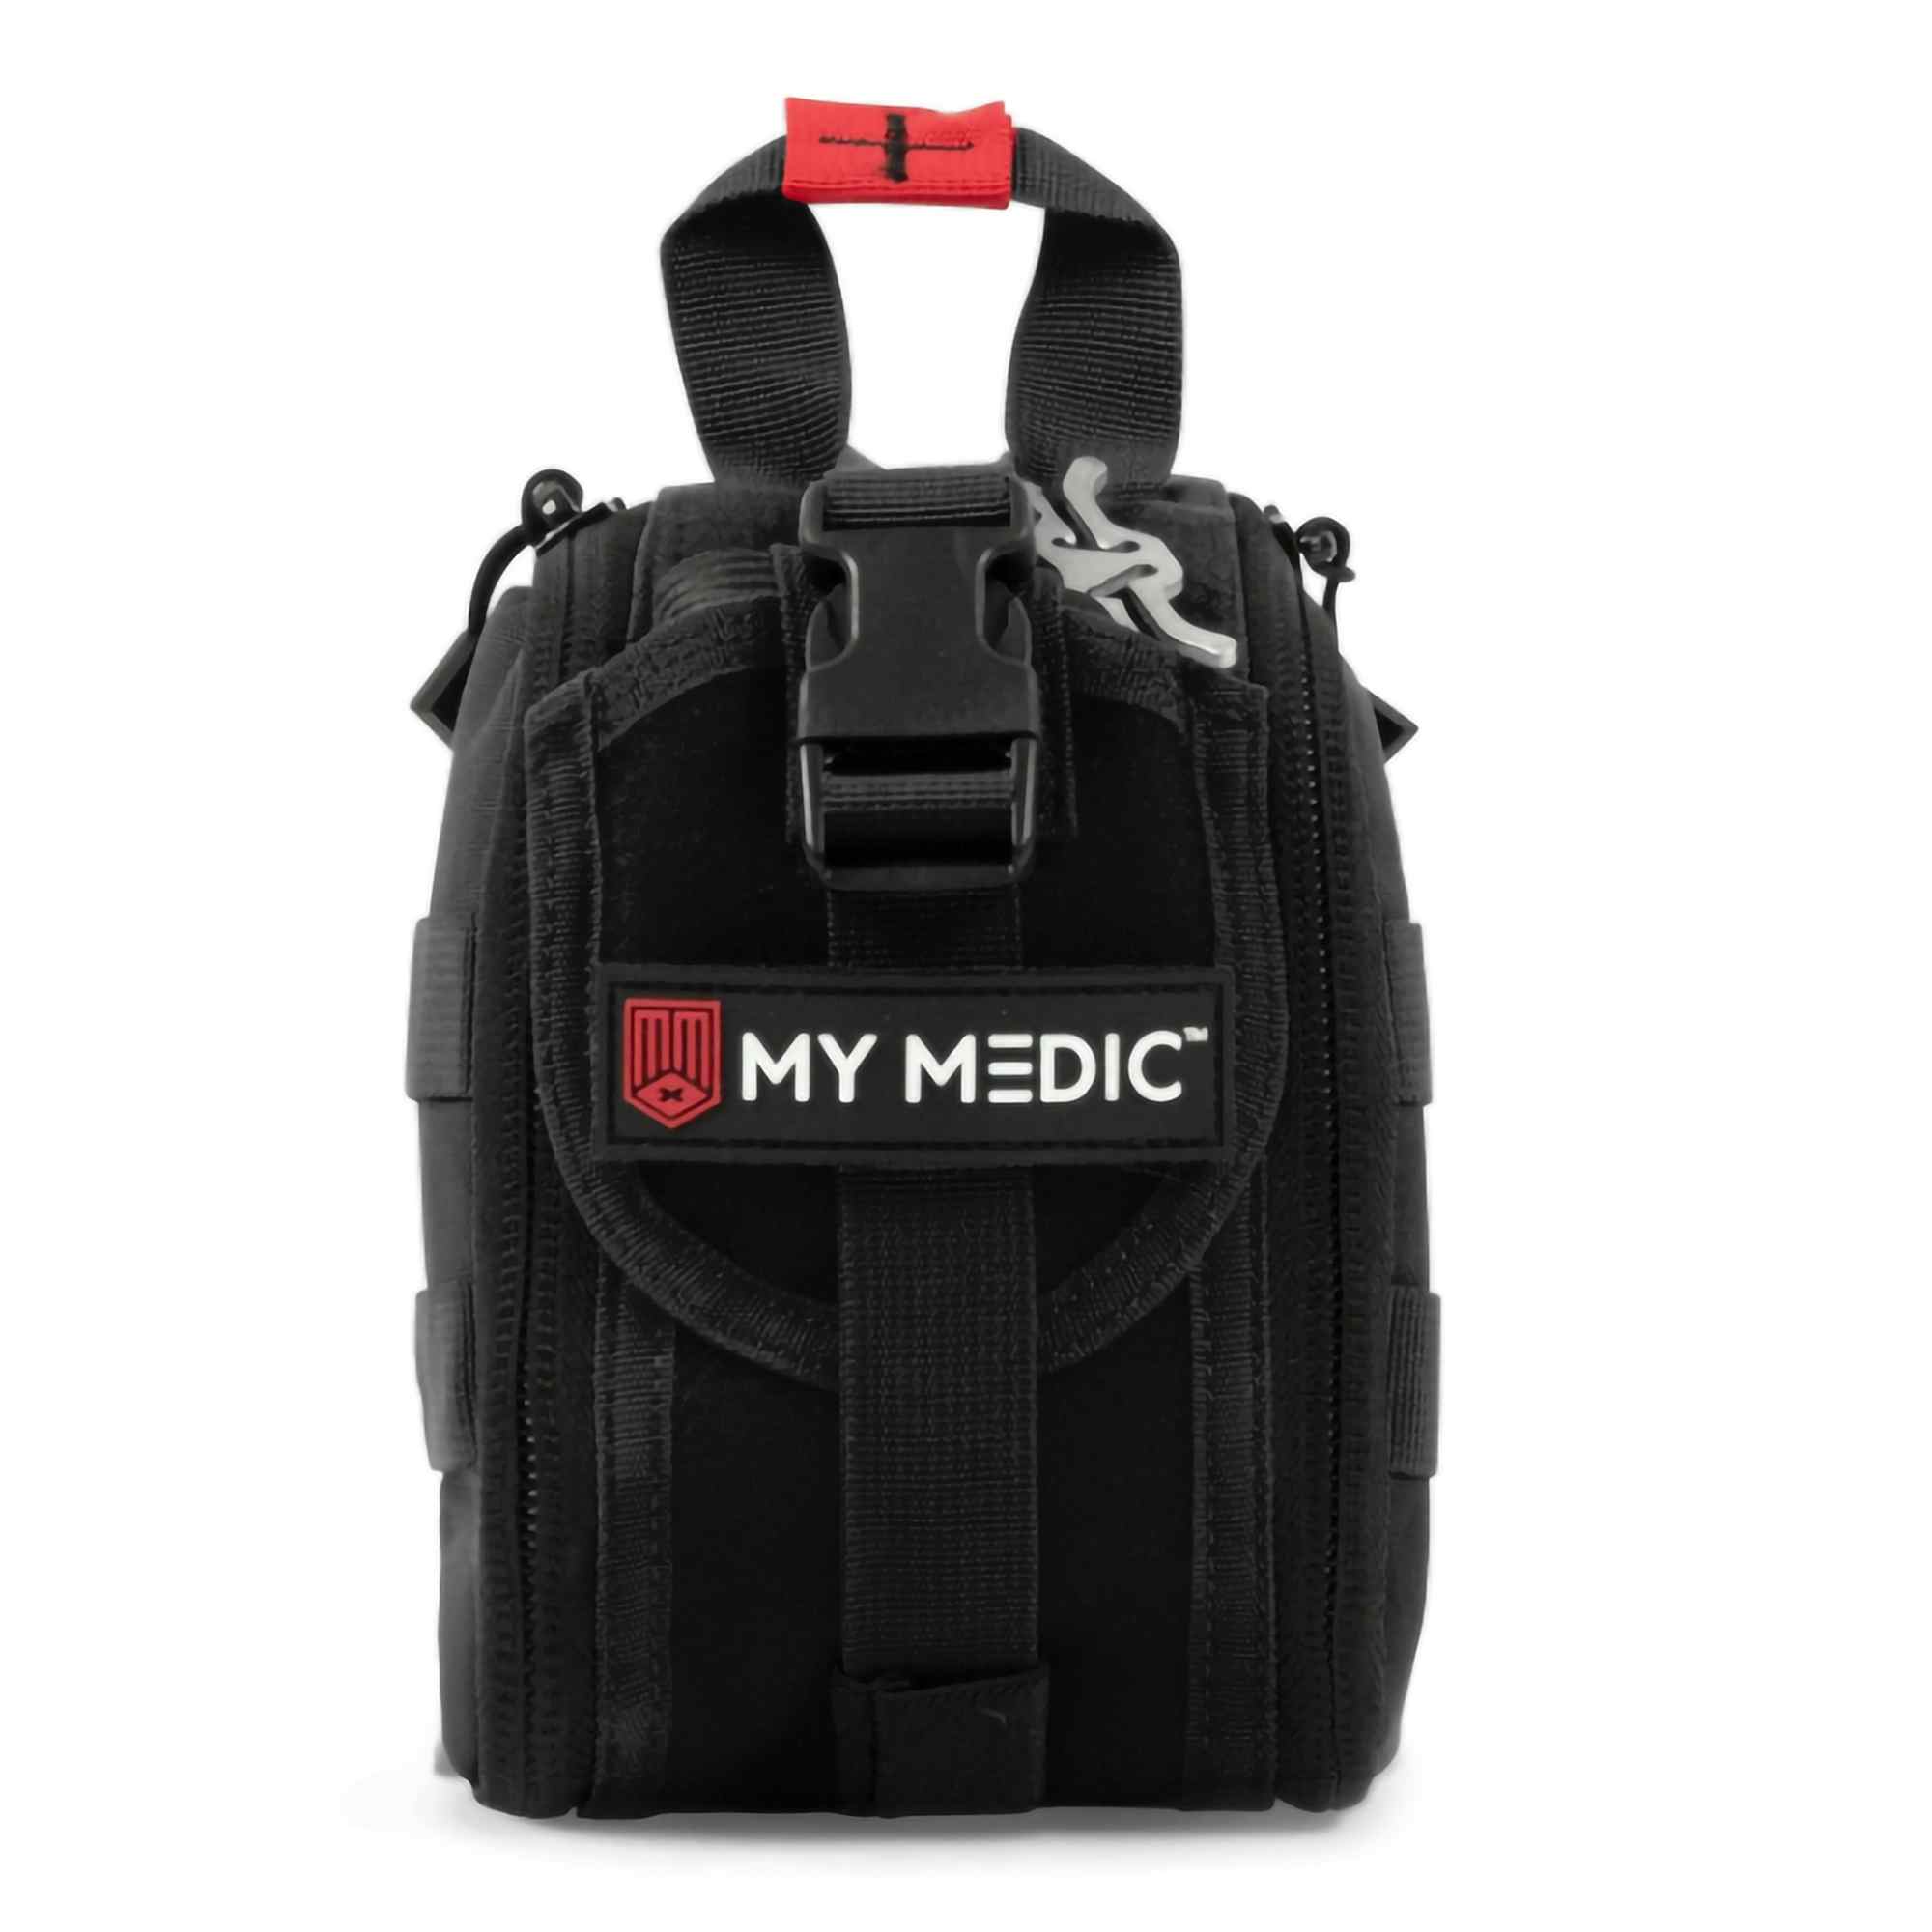 My Medic TFAK Trauma First Aid Kit